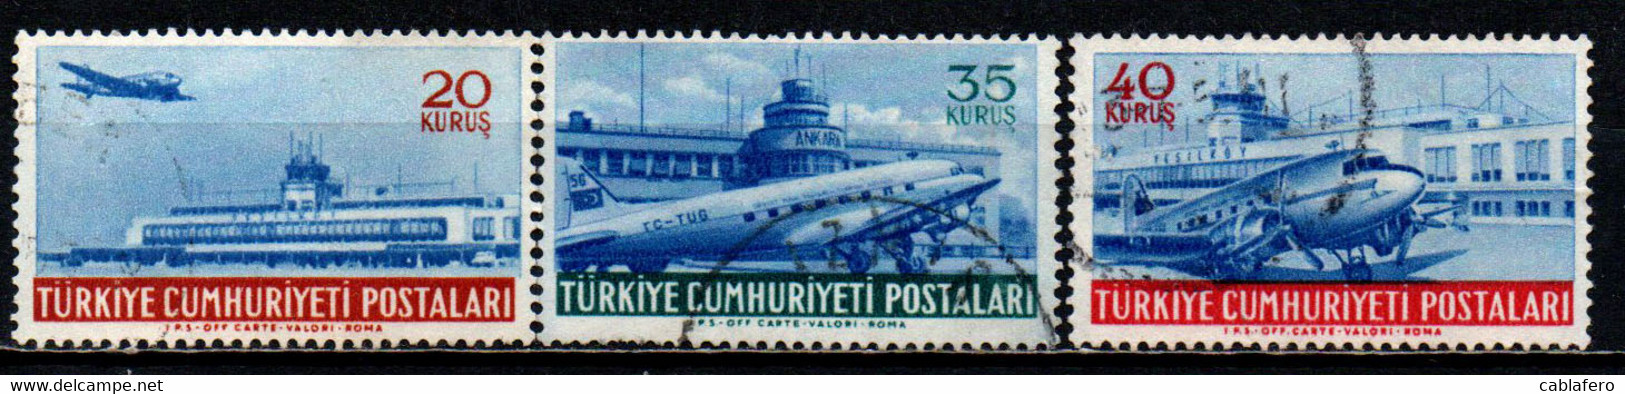 TURCHIA - 1954 - AEROPORTO DI YESILKOY E DI ANKARA - USATI - Luchtpost